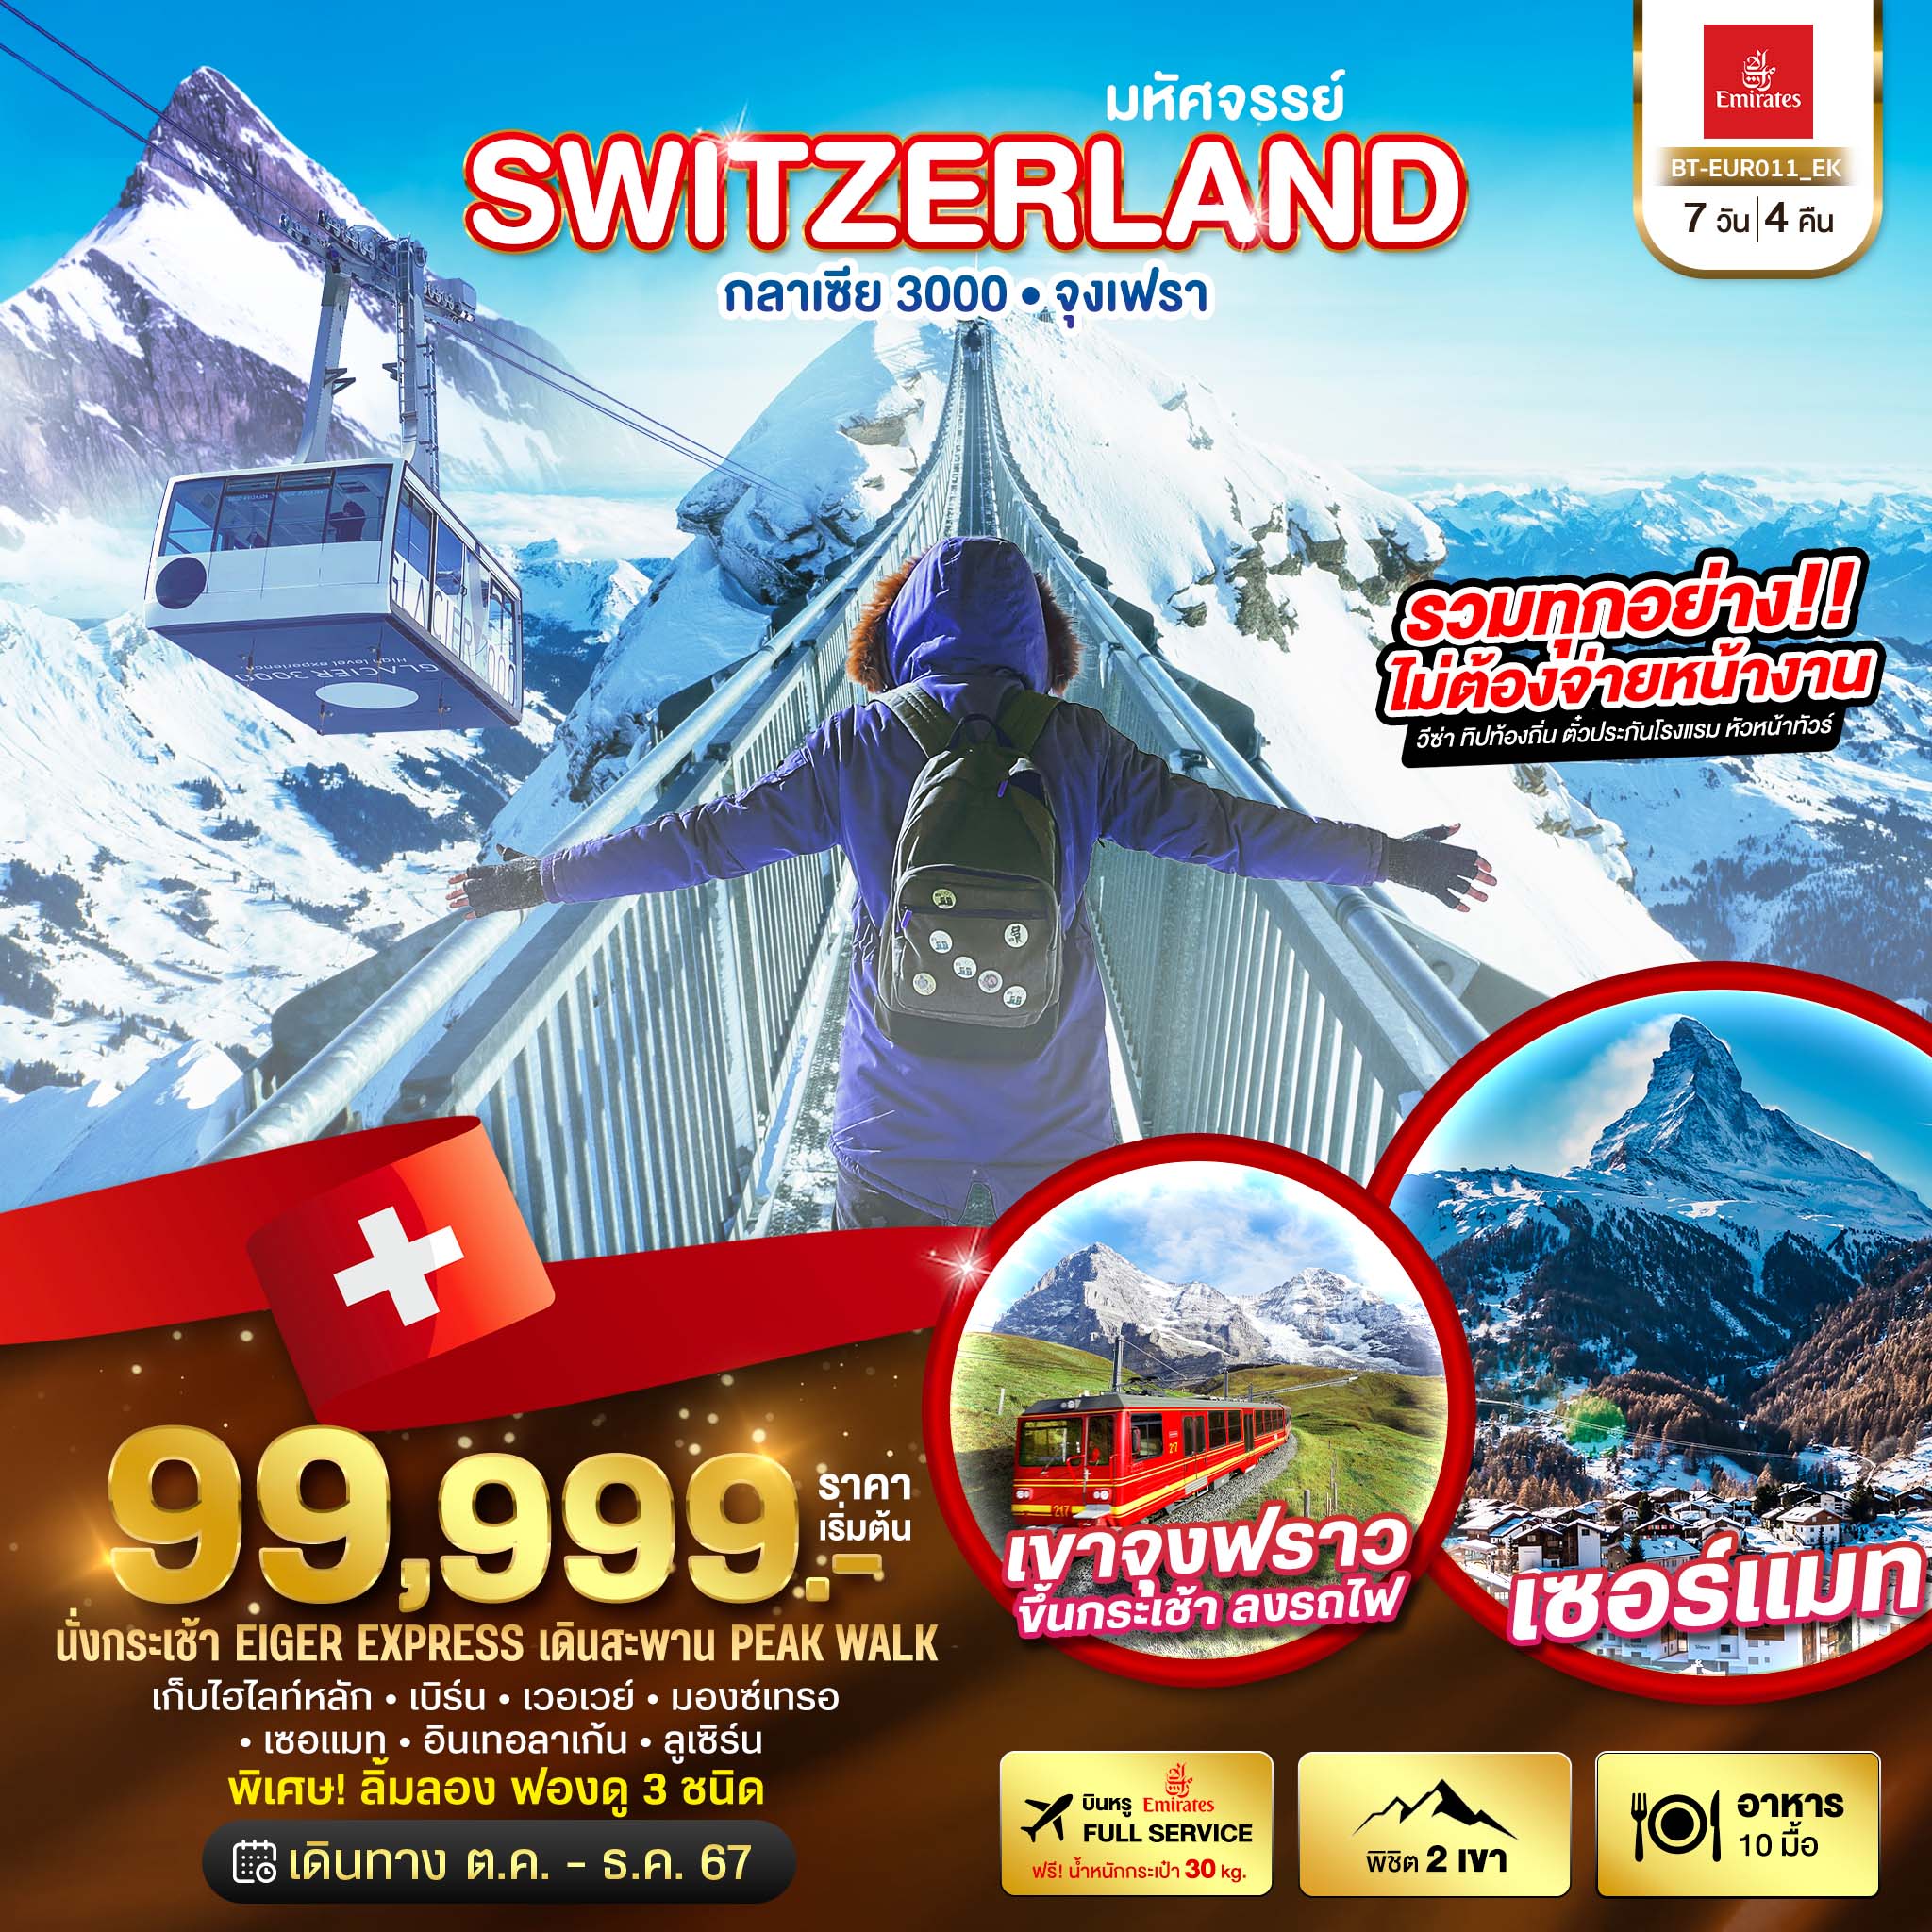 ทัวร์ยุโรป มหัศจรรย์ Semi Grand Swiss พิชิต 2 เขา จุงเฟรา กลาเซีย 3000 7วัน 4คืน EK